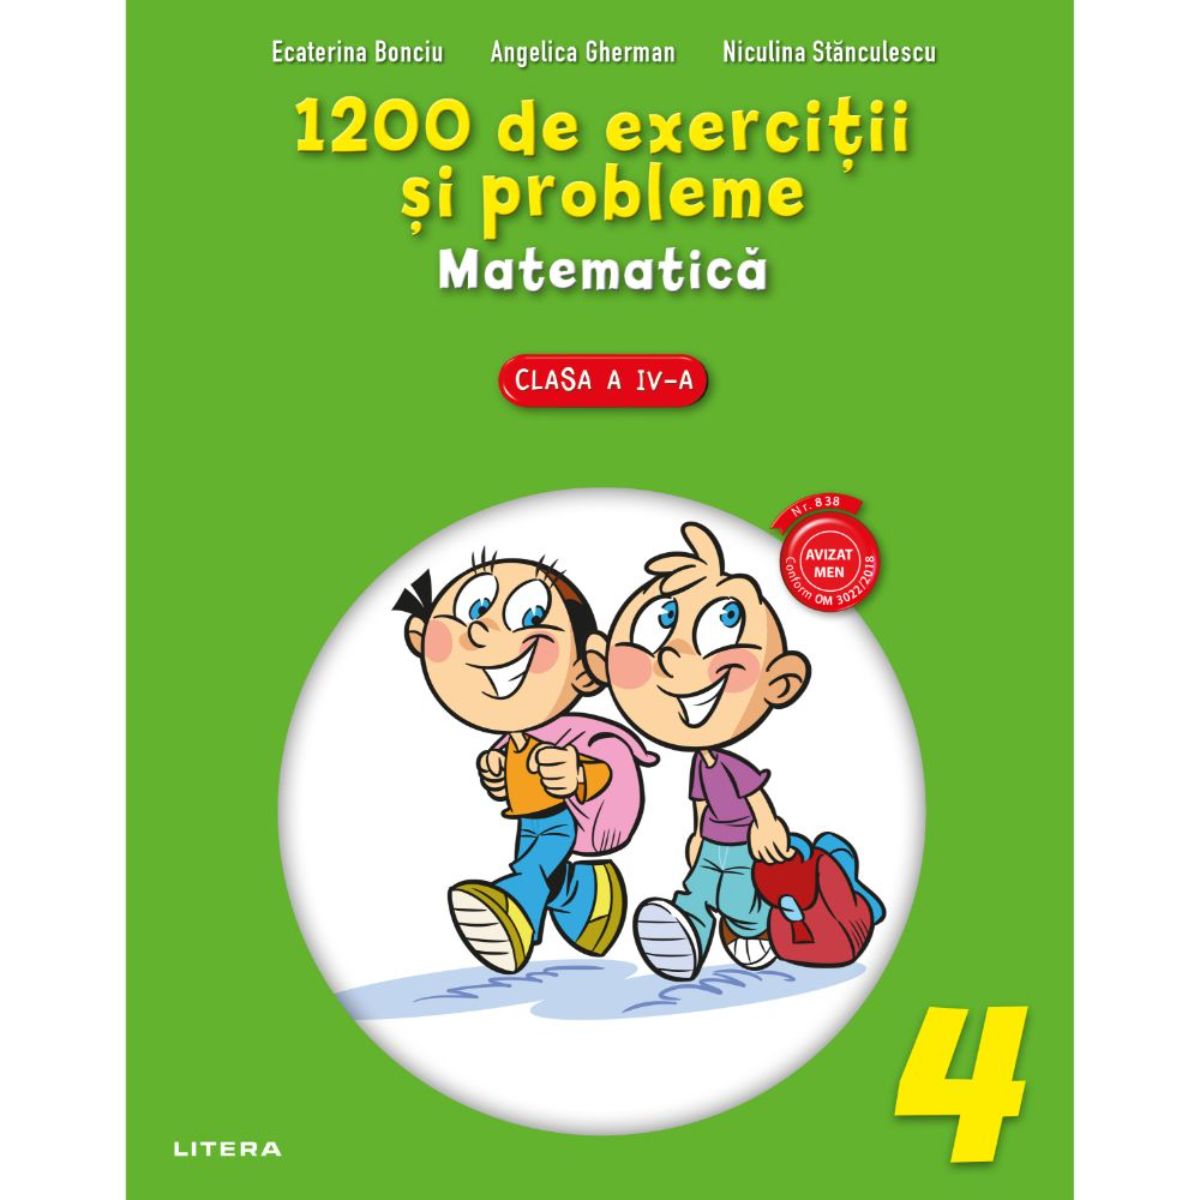 1200 de exercitii si probleme de matematica, Clasa a IV-a